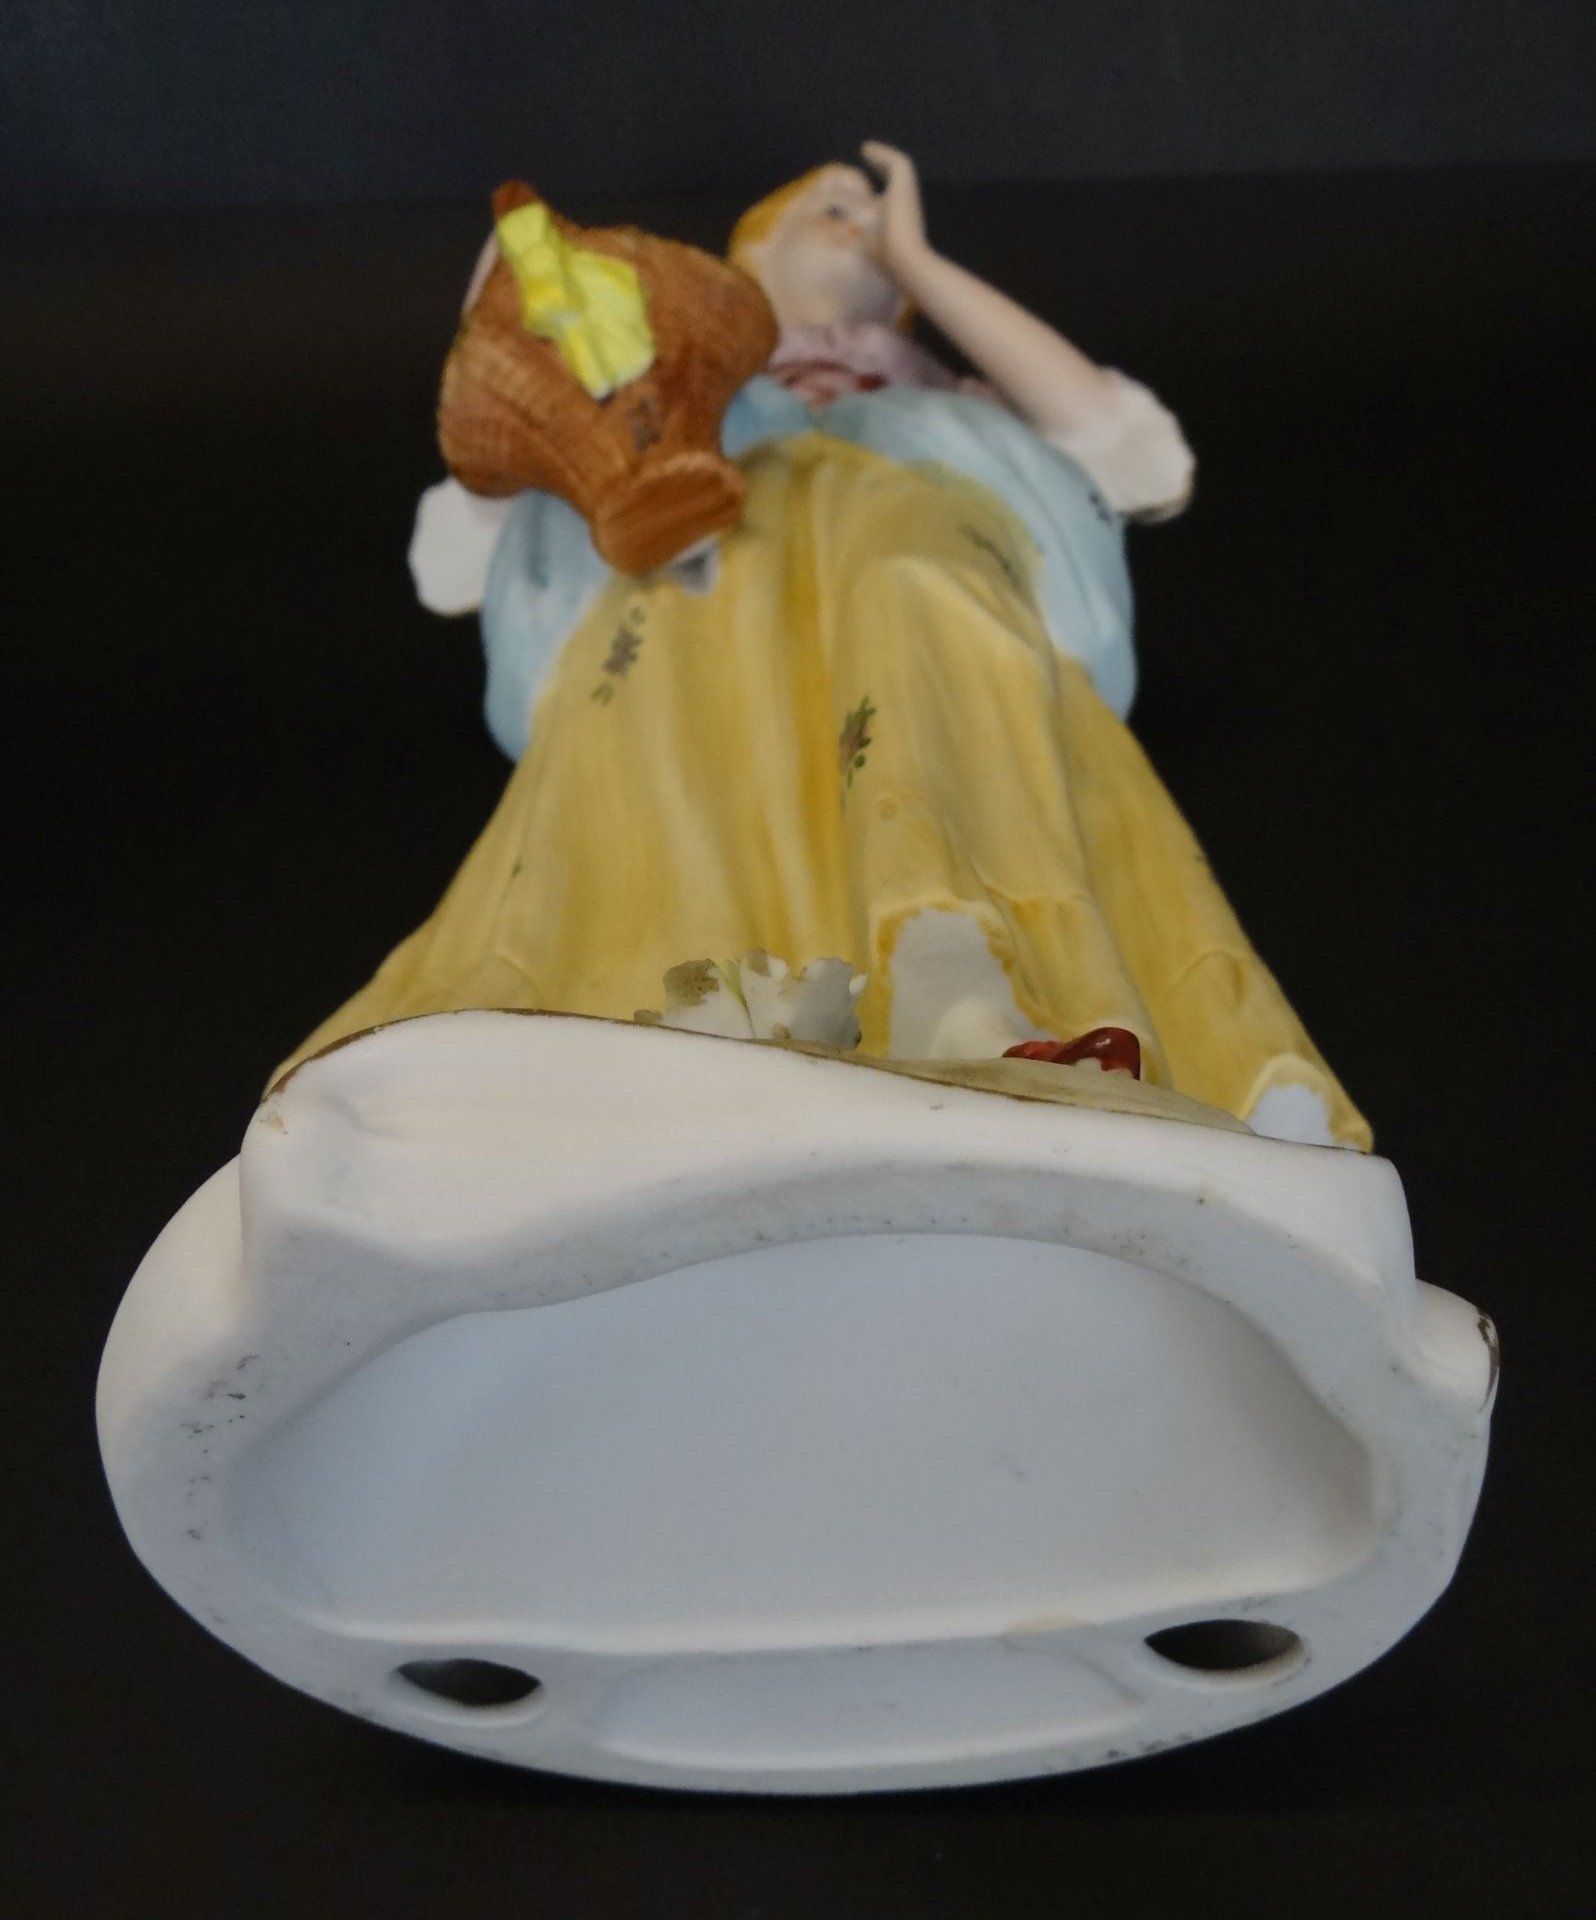 hohe Bisquitporzellan-Figur "Mädchen mit Blumenkorb", ein Daumen beschädigt, linke Hand geklebt, - Bild 7 aus 7